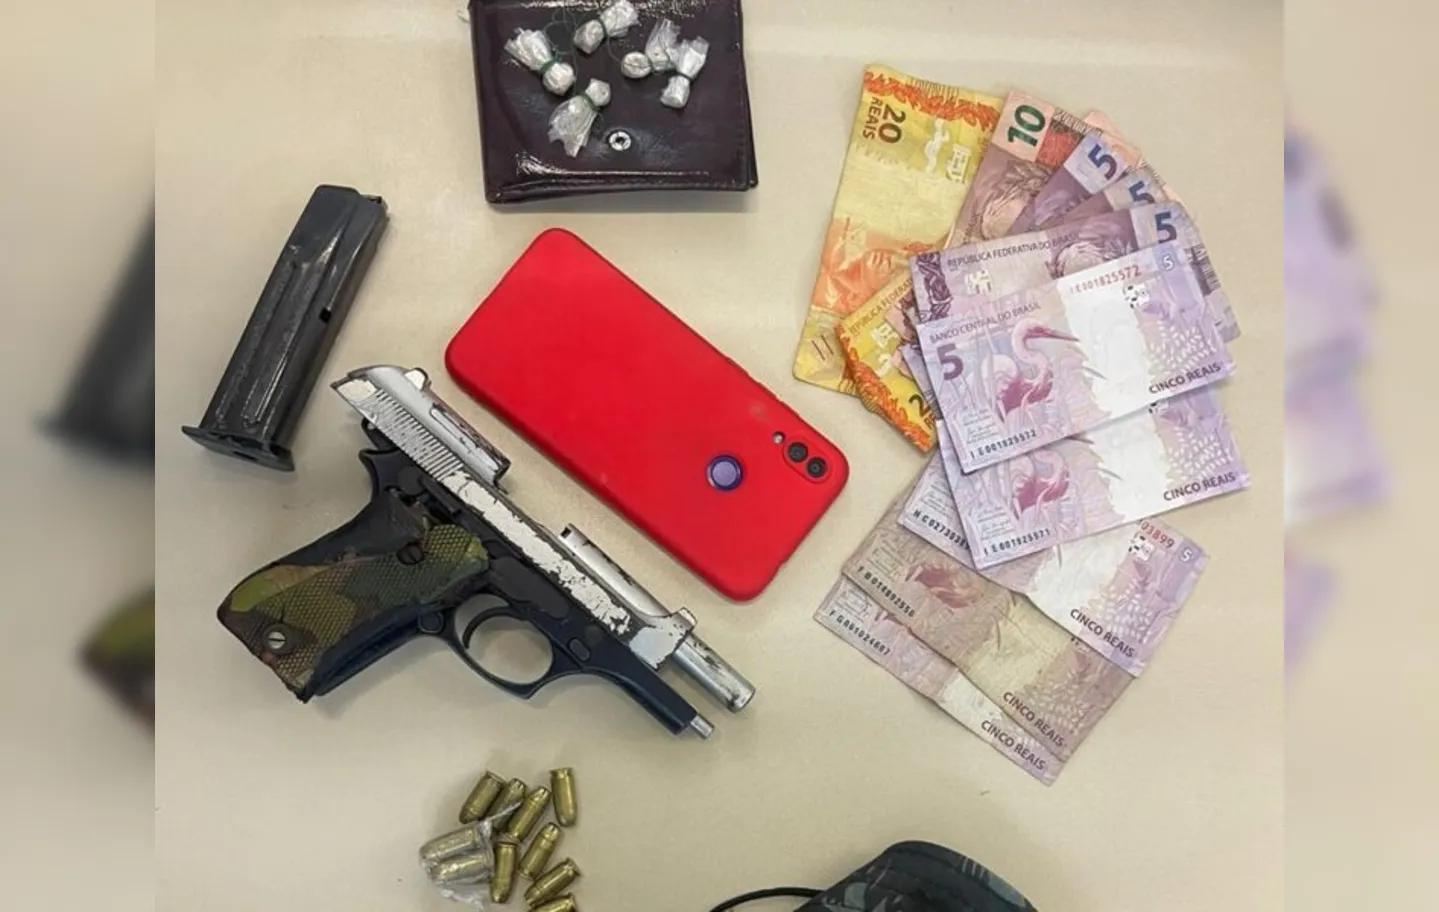 Foram encontrados porções de crack, uma pistola calibre 380, munições, um carregador de pistola, além de celular e dinheiro